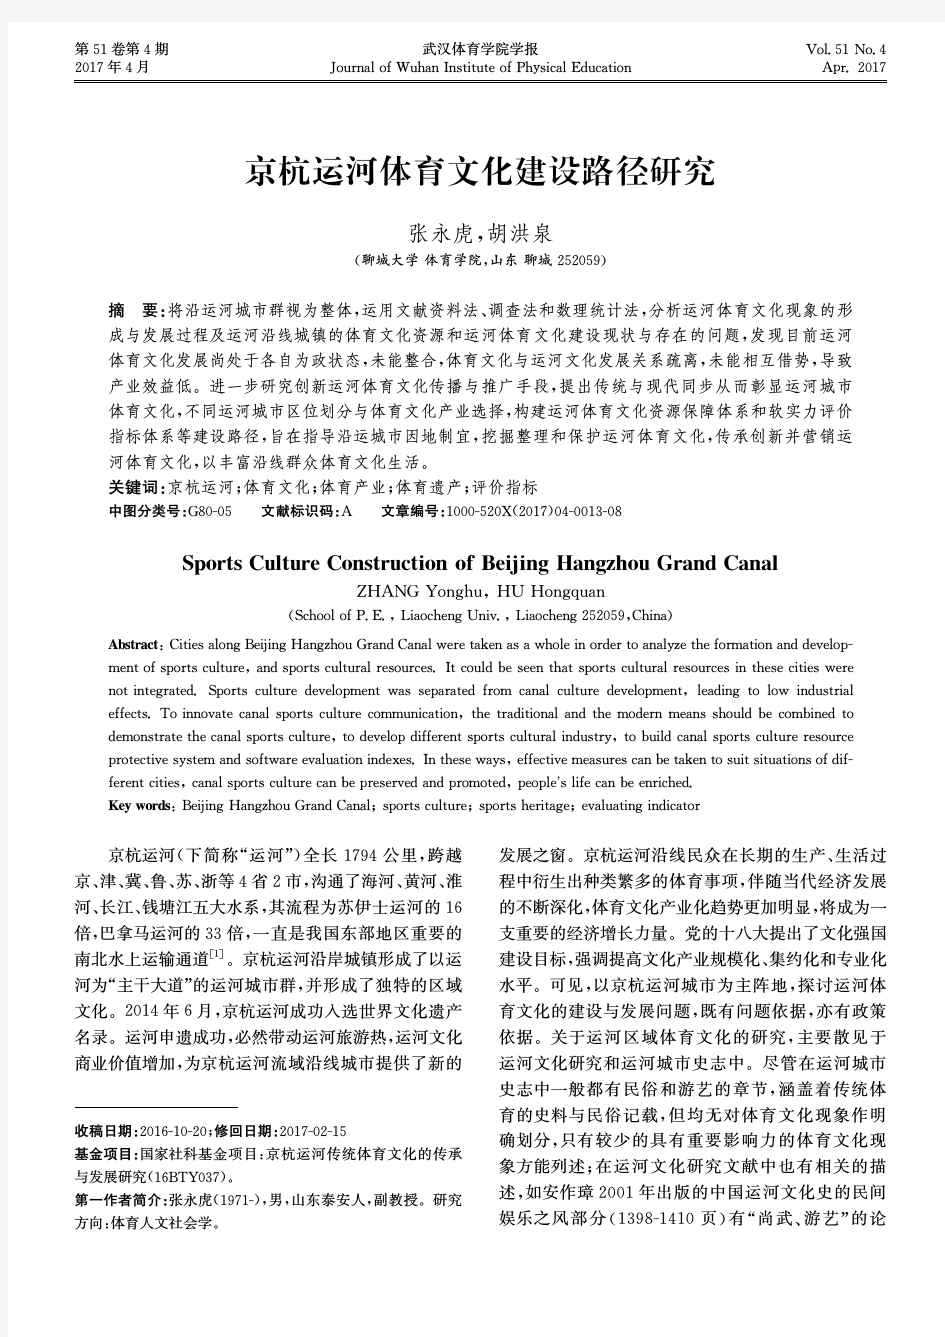 京杭运河体育文化建设路径研究